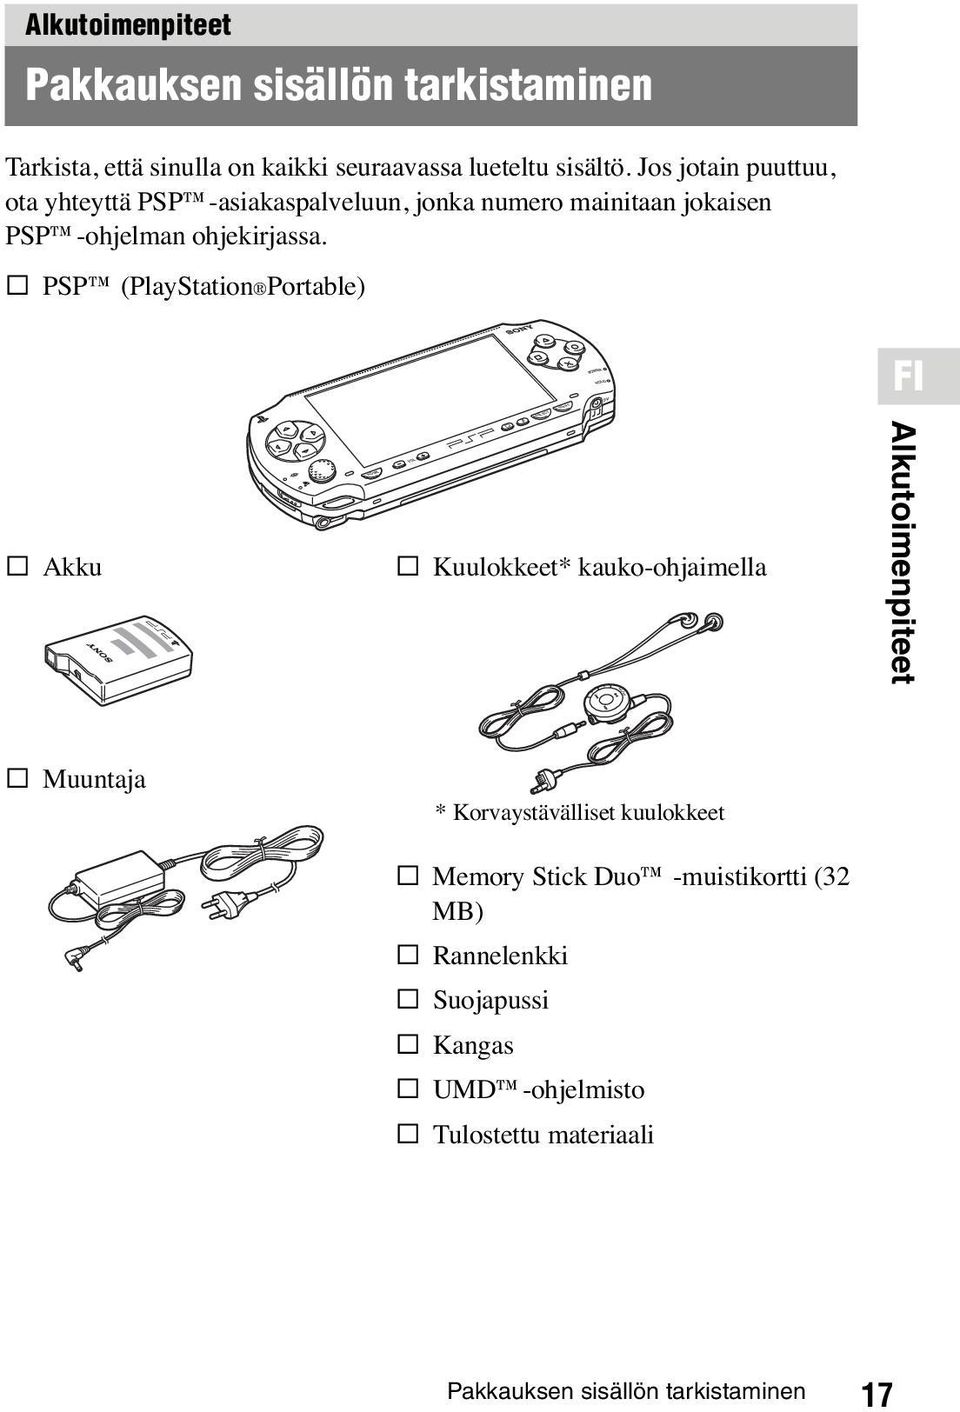 s PSP (PlayStation Portable) s Akku O HOME s Kuulokkeet* kauko-ohjaimella Alkutoimenpiteet s Muuntaja * Korvaystävälliset kuulokkeet s